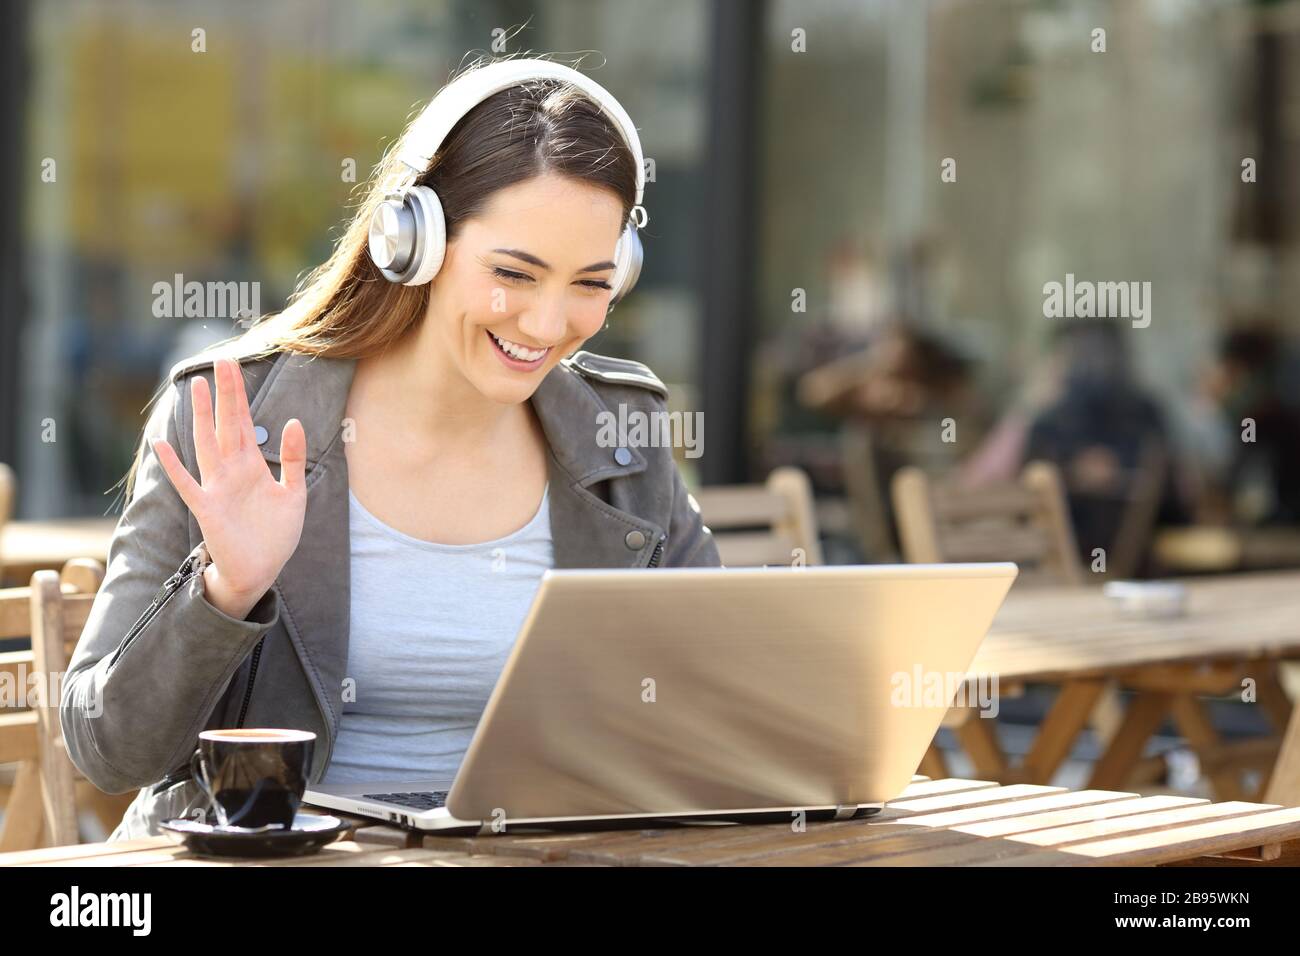 Glückliche Frau, die auf einem Laptop ein schnurloses Headset-Videoband trägt und auf einer Café-Terrasse sitzt Stockfoto